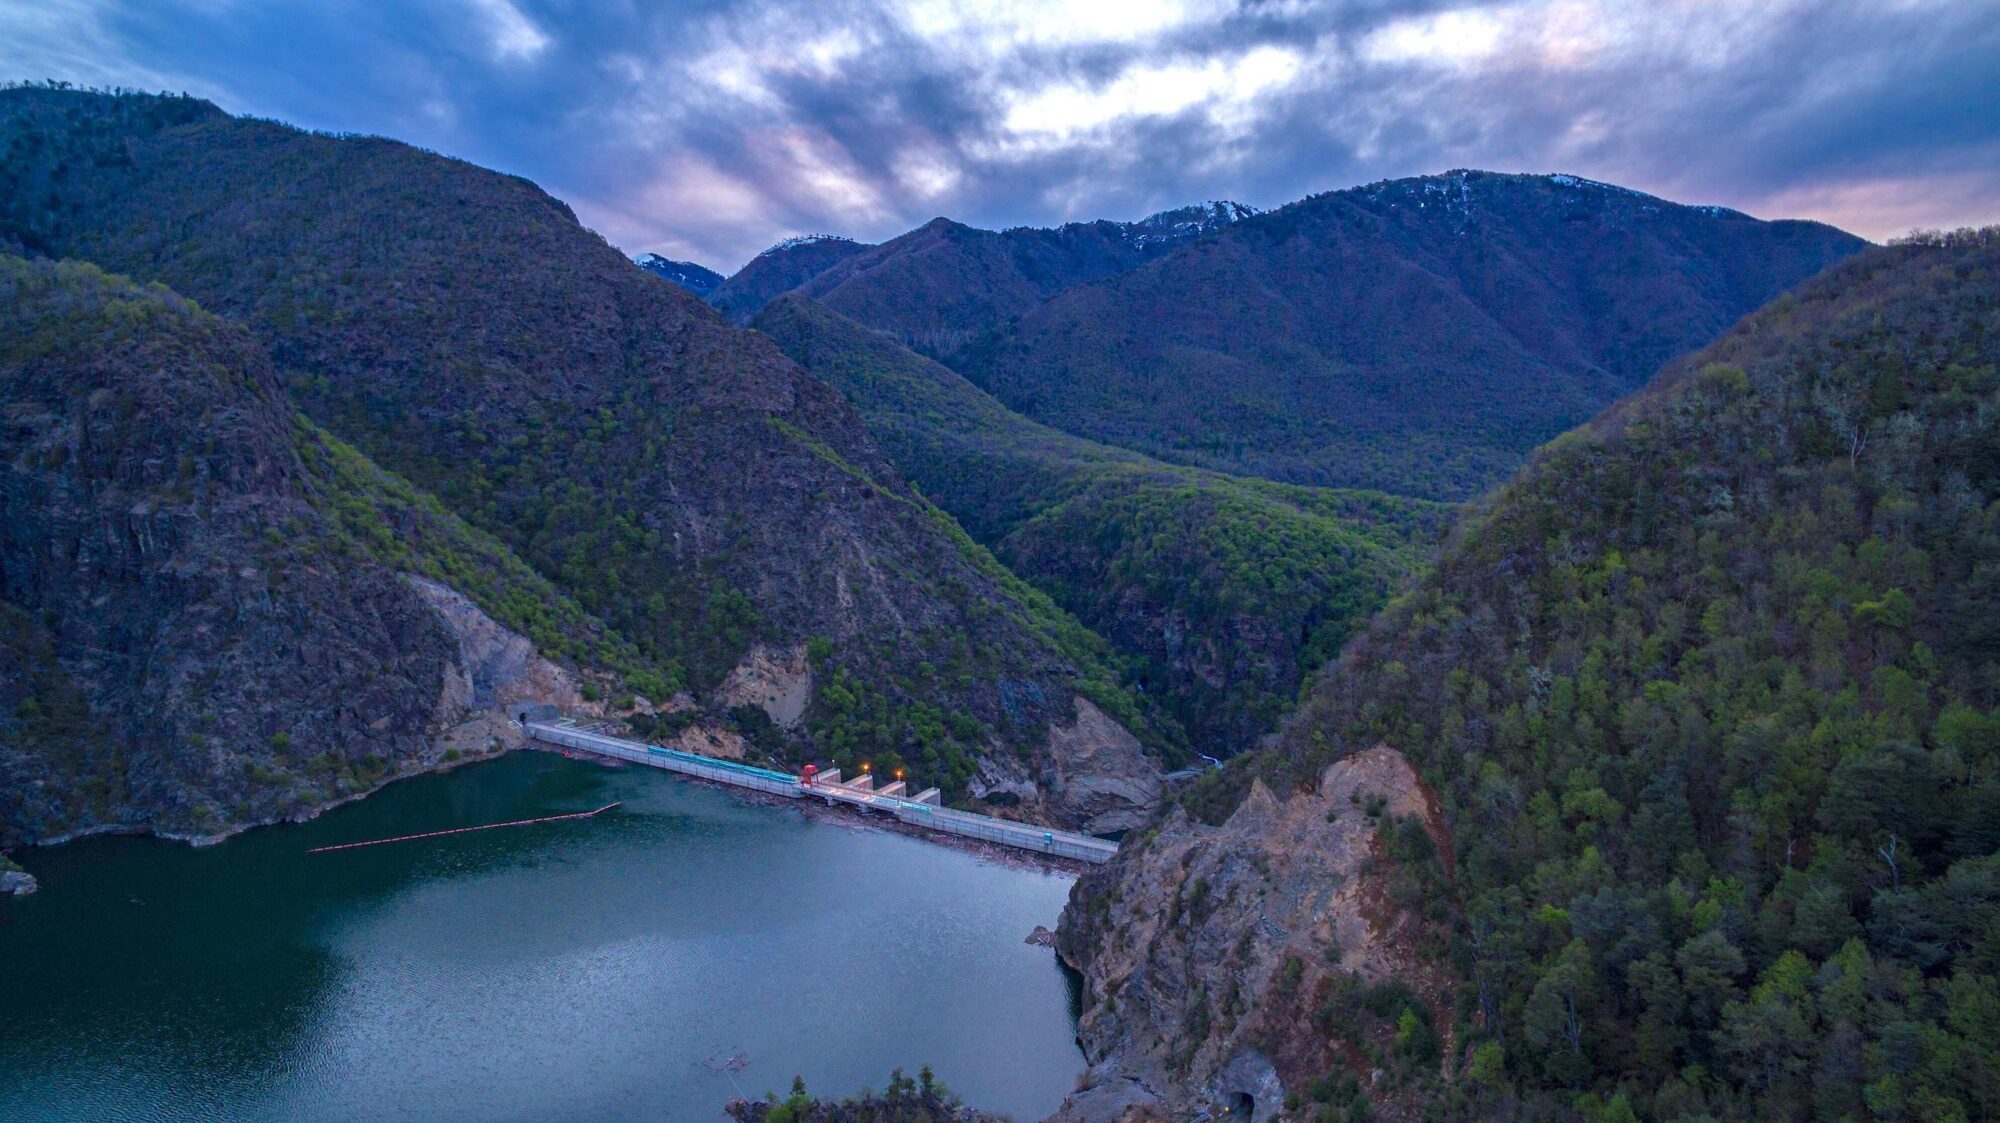 Vista aérea de la represa Ralco en el río Bíobío en Chile, entre montañas con vegetación